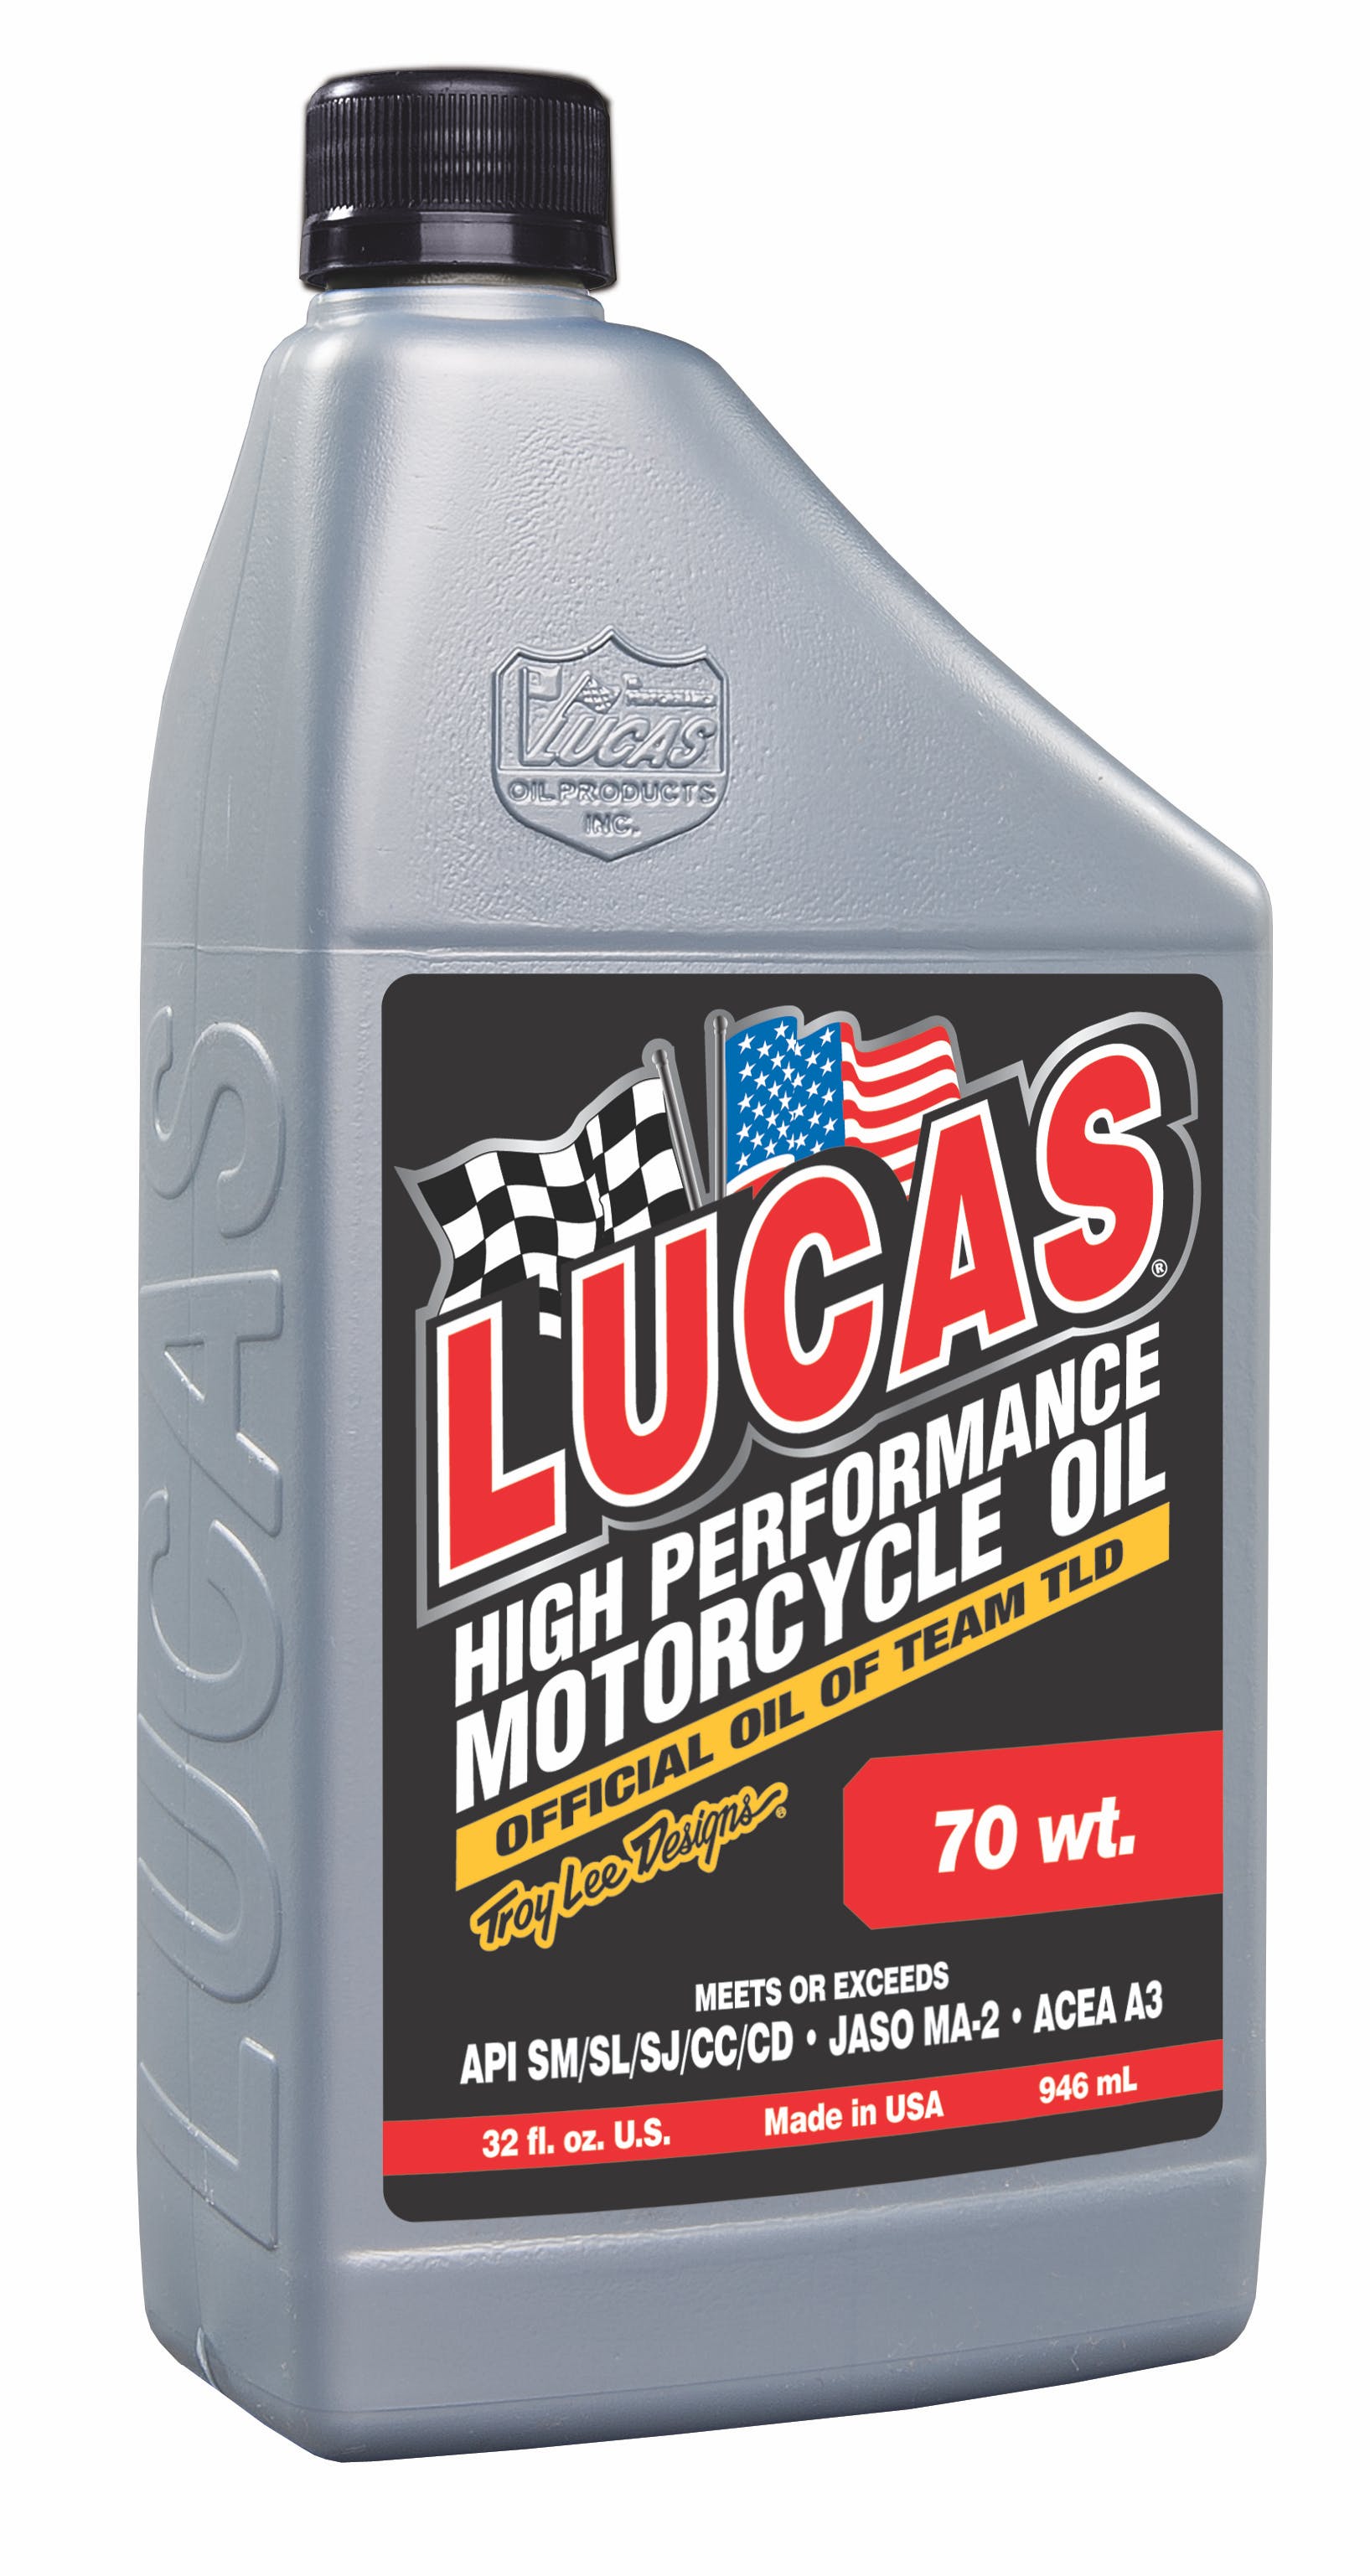 Lucas OIL 70 wt. Motorcycle Oil (1 QT) 20714